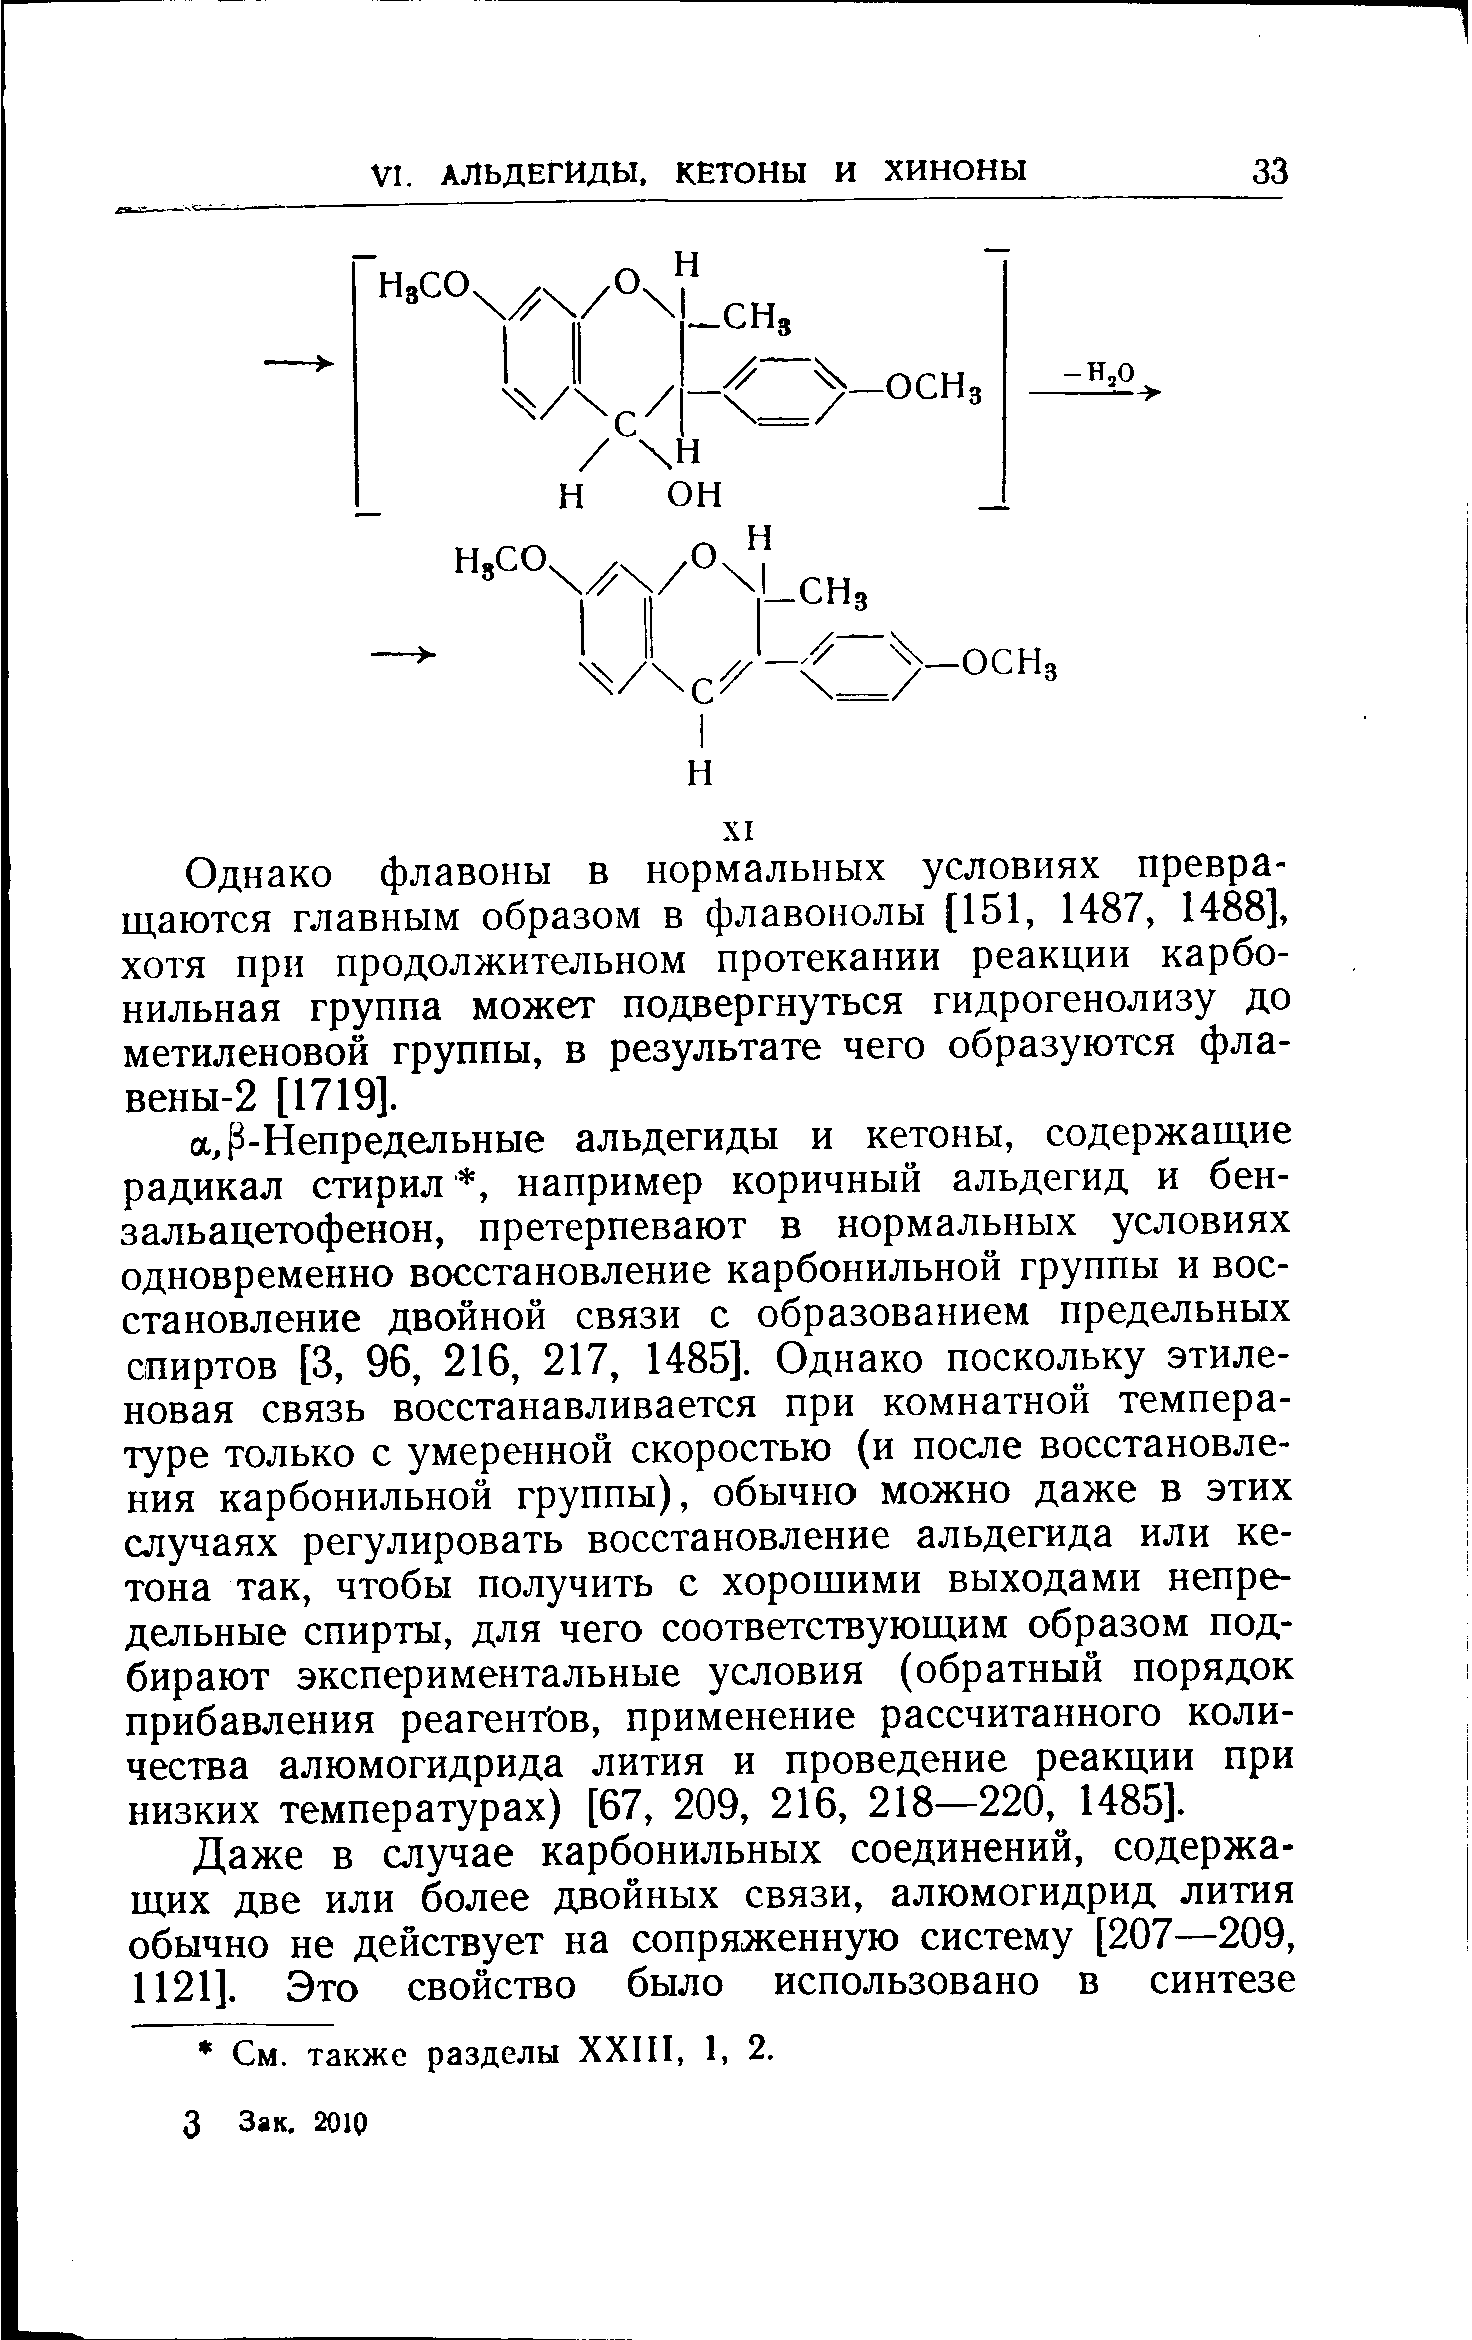 Однако флавоны в нормальных условиях превращаются главным образом в флавонолы [151, 1487, 1488], хотя при продолжительном протекании реакции карбонильная группа может подвергнуться гидрогенолизу до метиленовой группы, в результате чего образуются фла-вены-2 [1719].